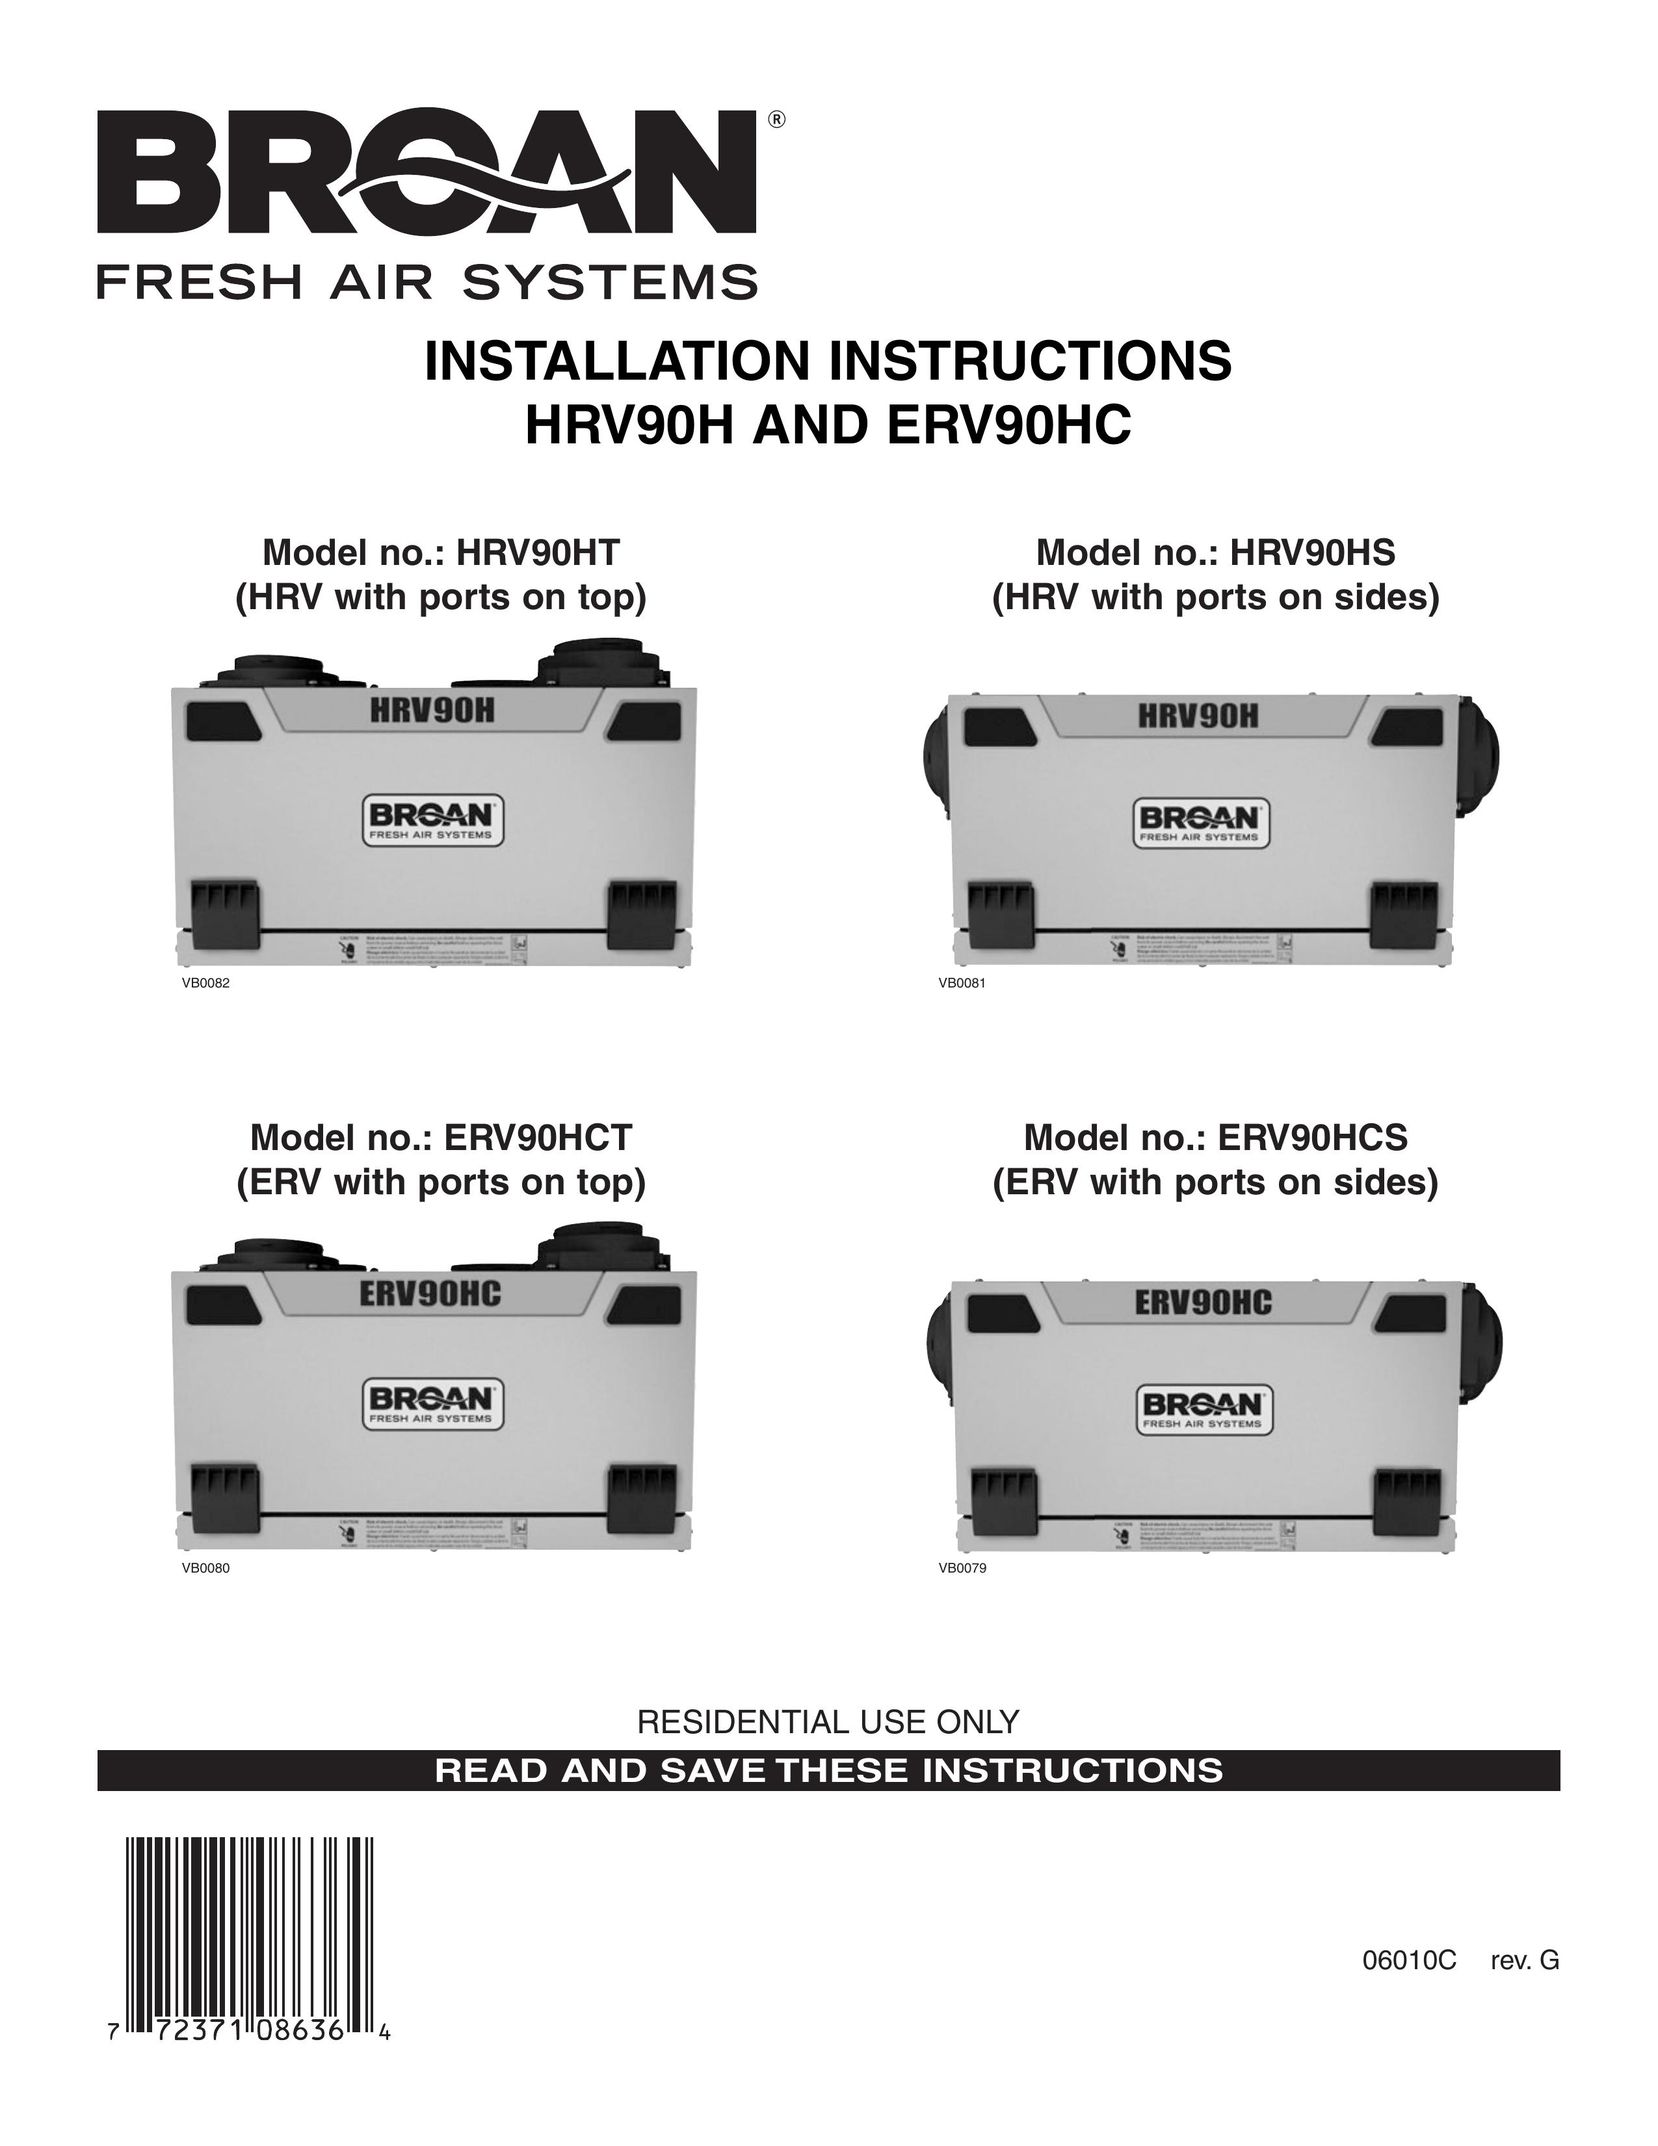 Broan ERV90HCS Air Cleaner User Manual